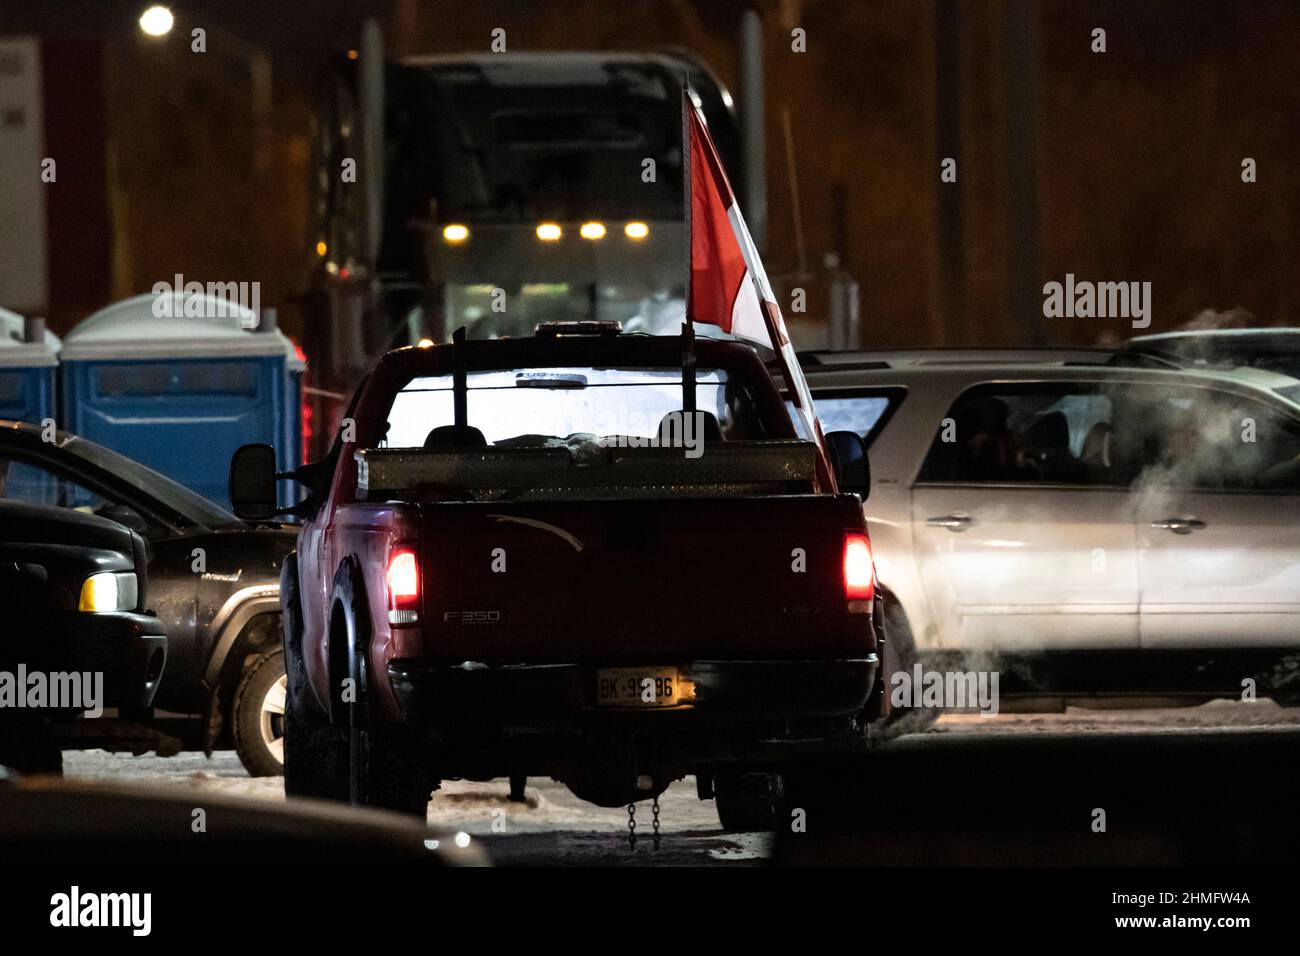 Ein Pick-up-Truck, der aus Protest die kanadische Flagge führt, steht nachts im Stadtzentrum im Leerlauf als Teil der Anti-Mandats-Blockade und Besetzung von Ottawa. Stockfoto